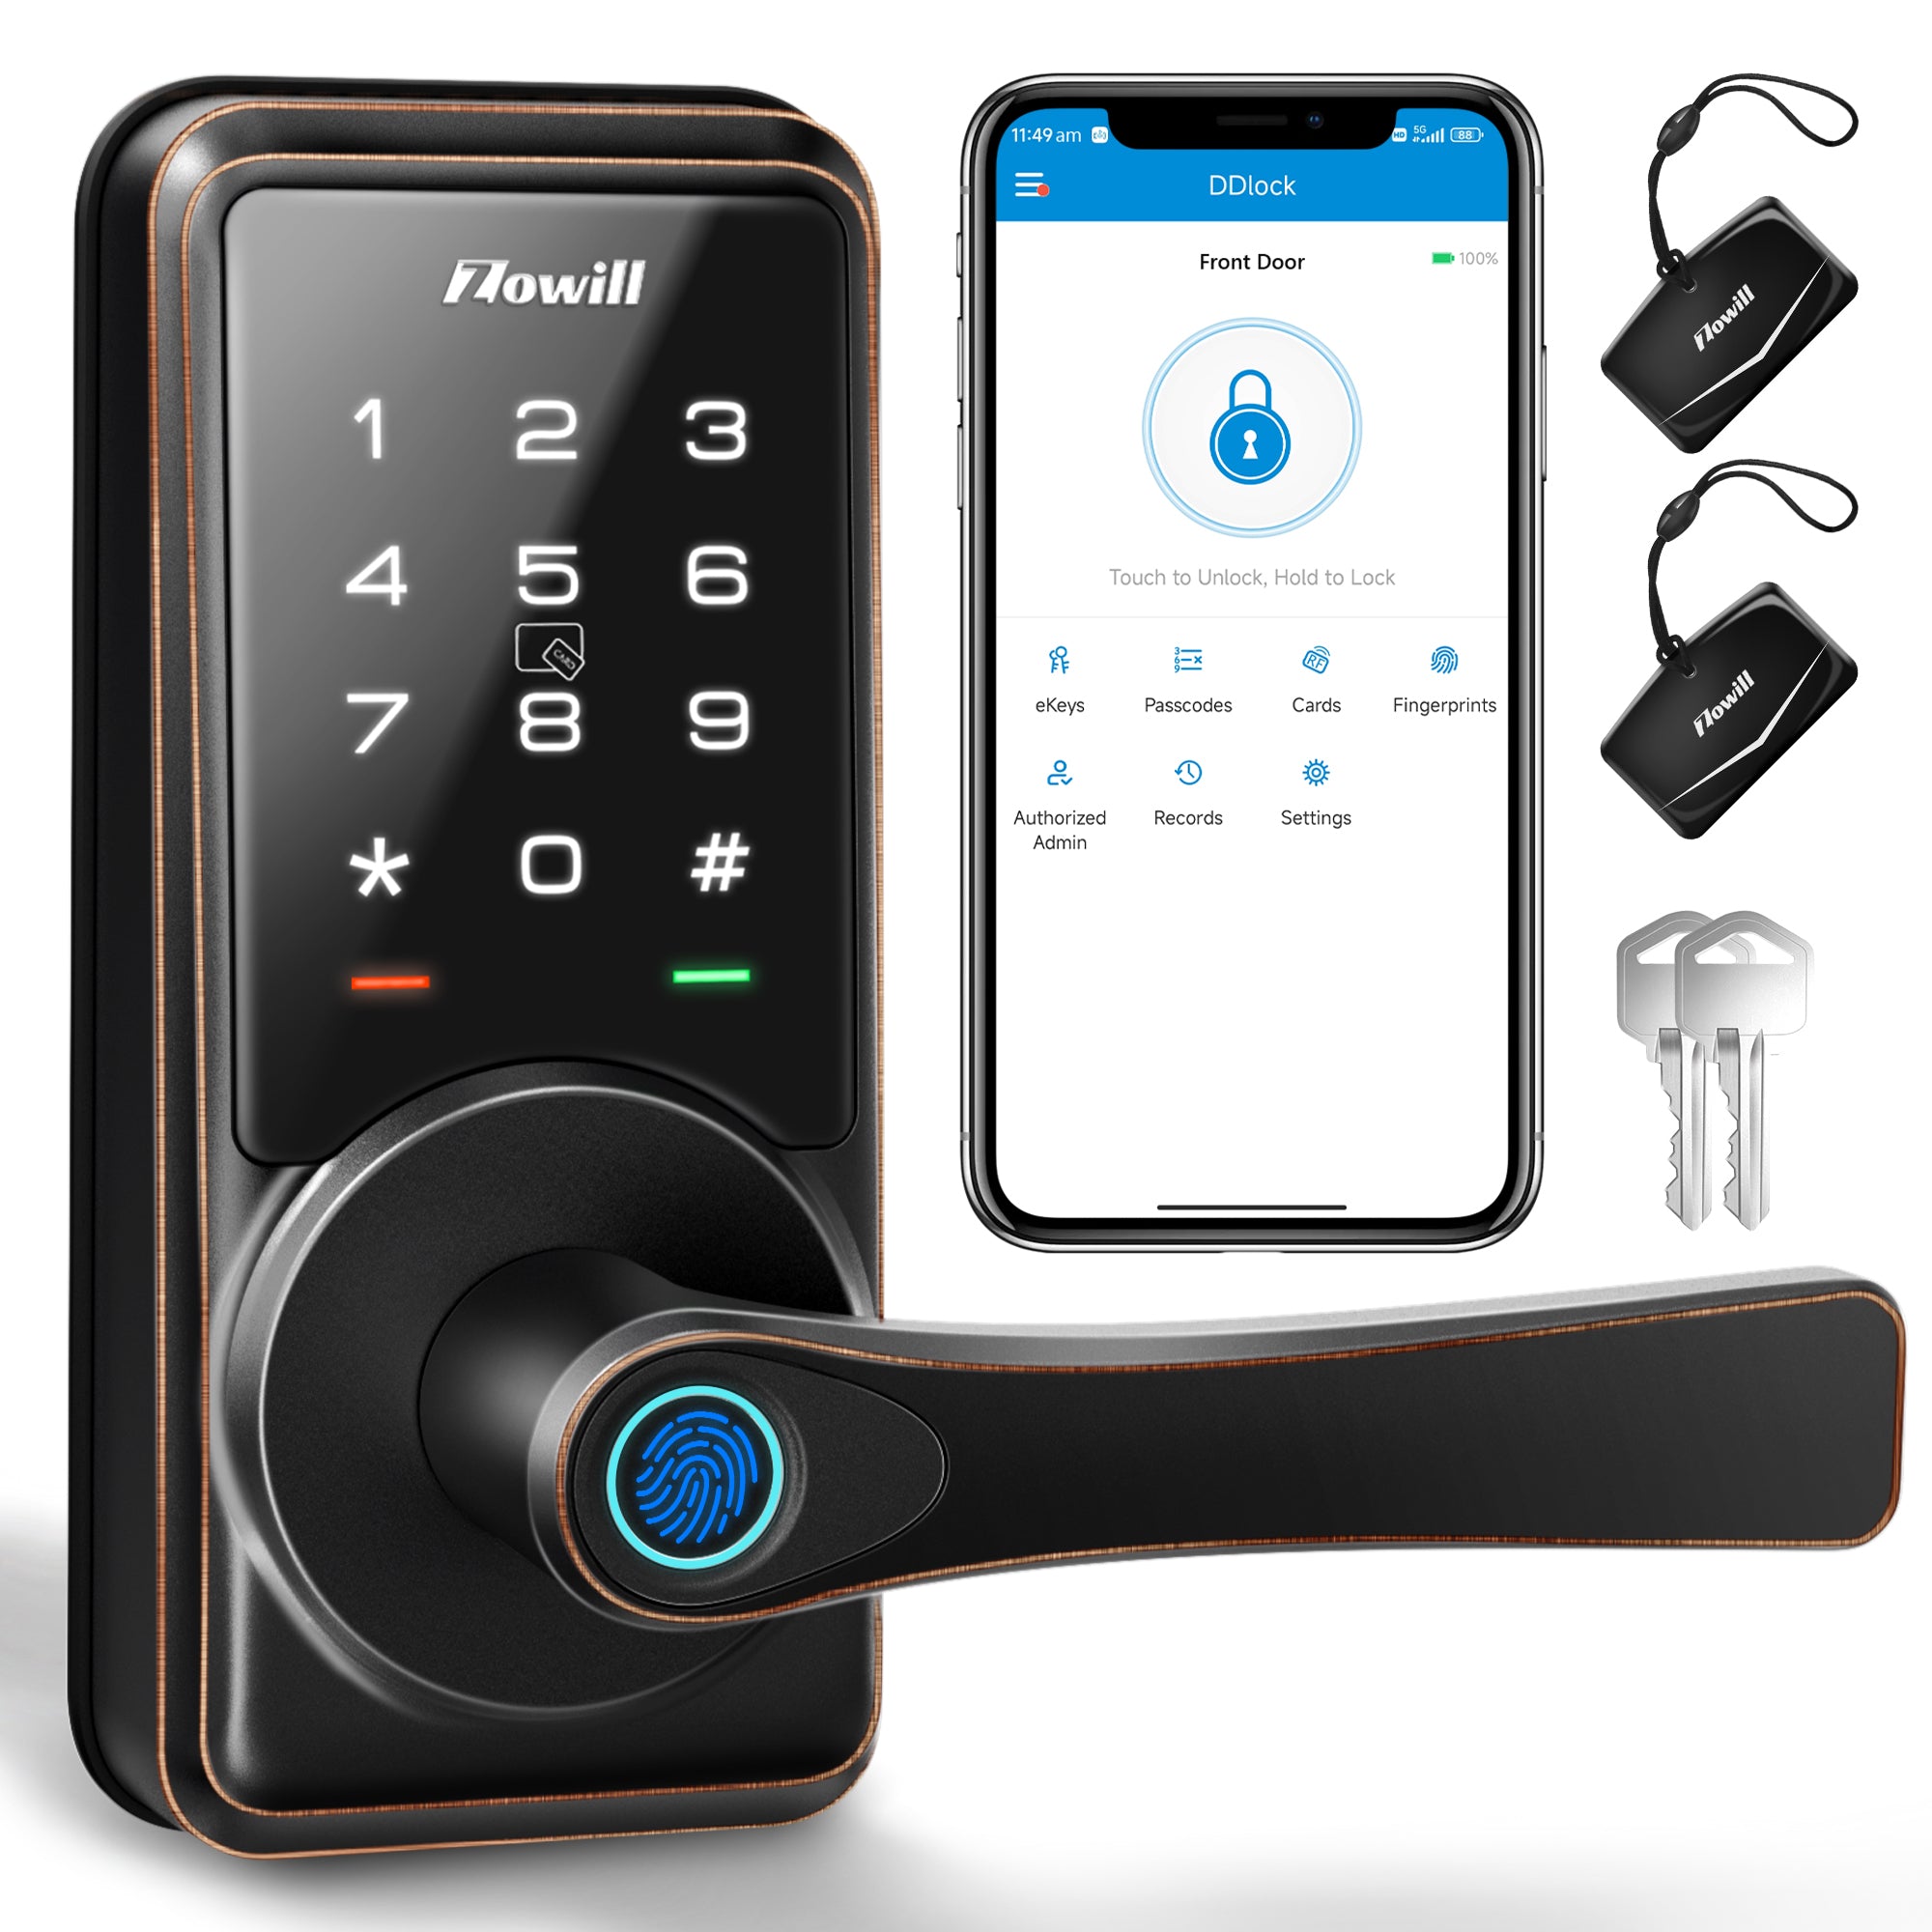 Smart Lock, Zowill 7-in-1 Fingerprint Door Lock, DK09 – zowill